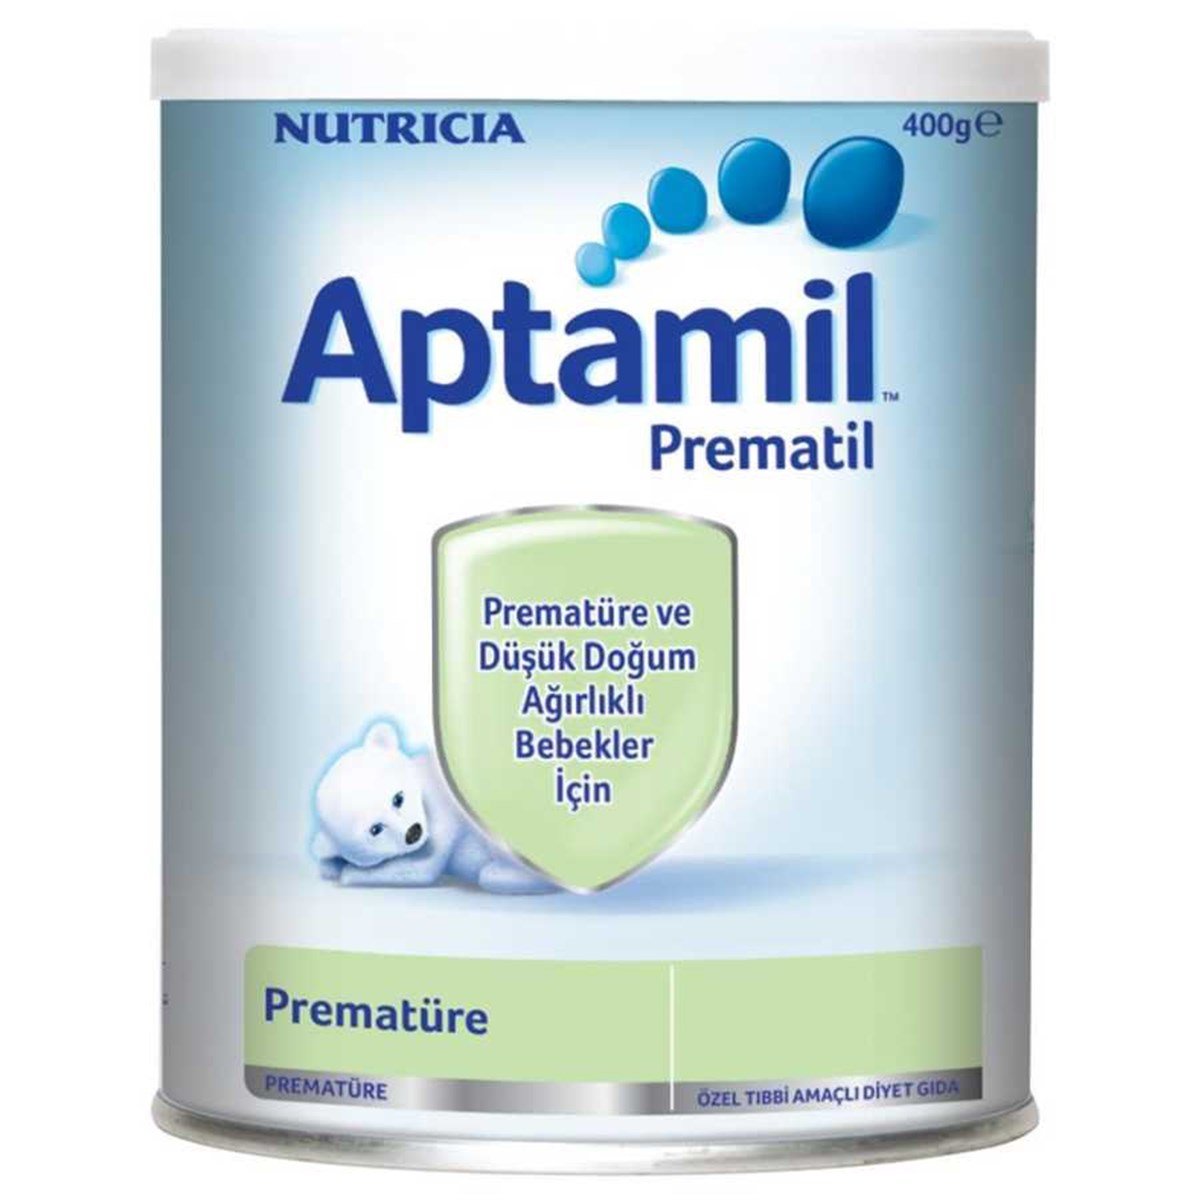 Aptamil Prematil 400 gr Prematüre Bebek Maması Fiyatları | Dermosiparis.com